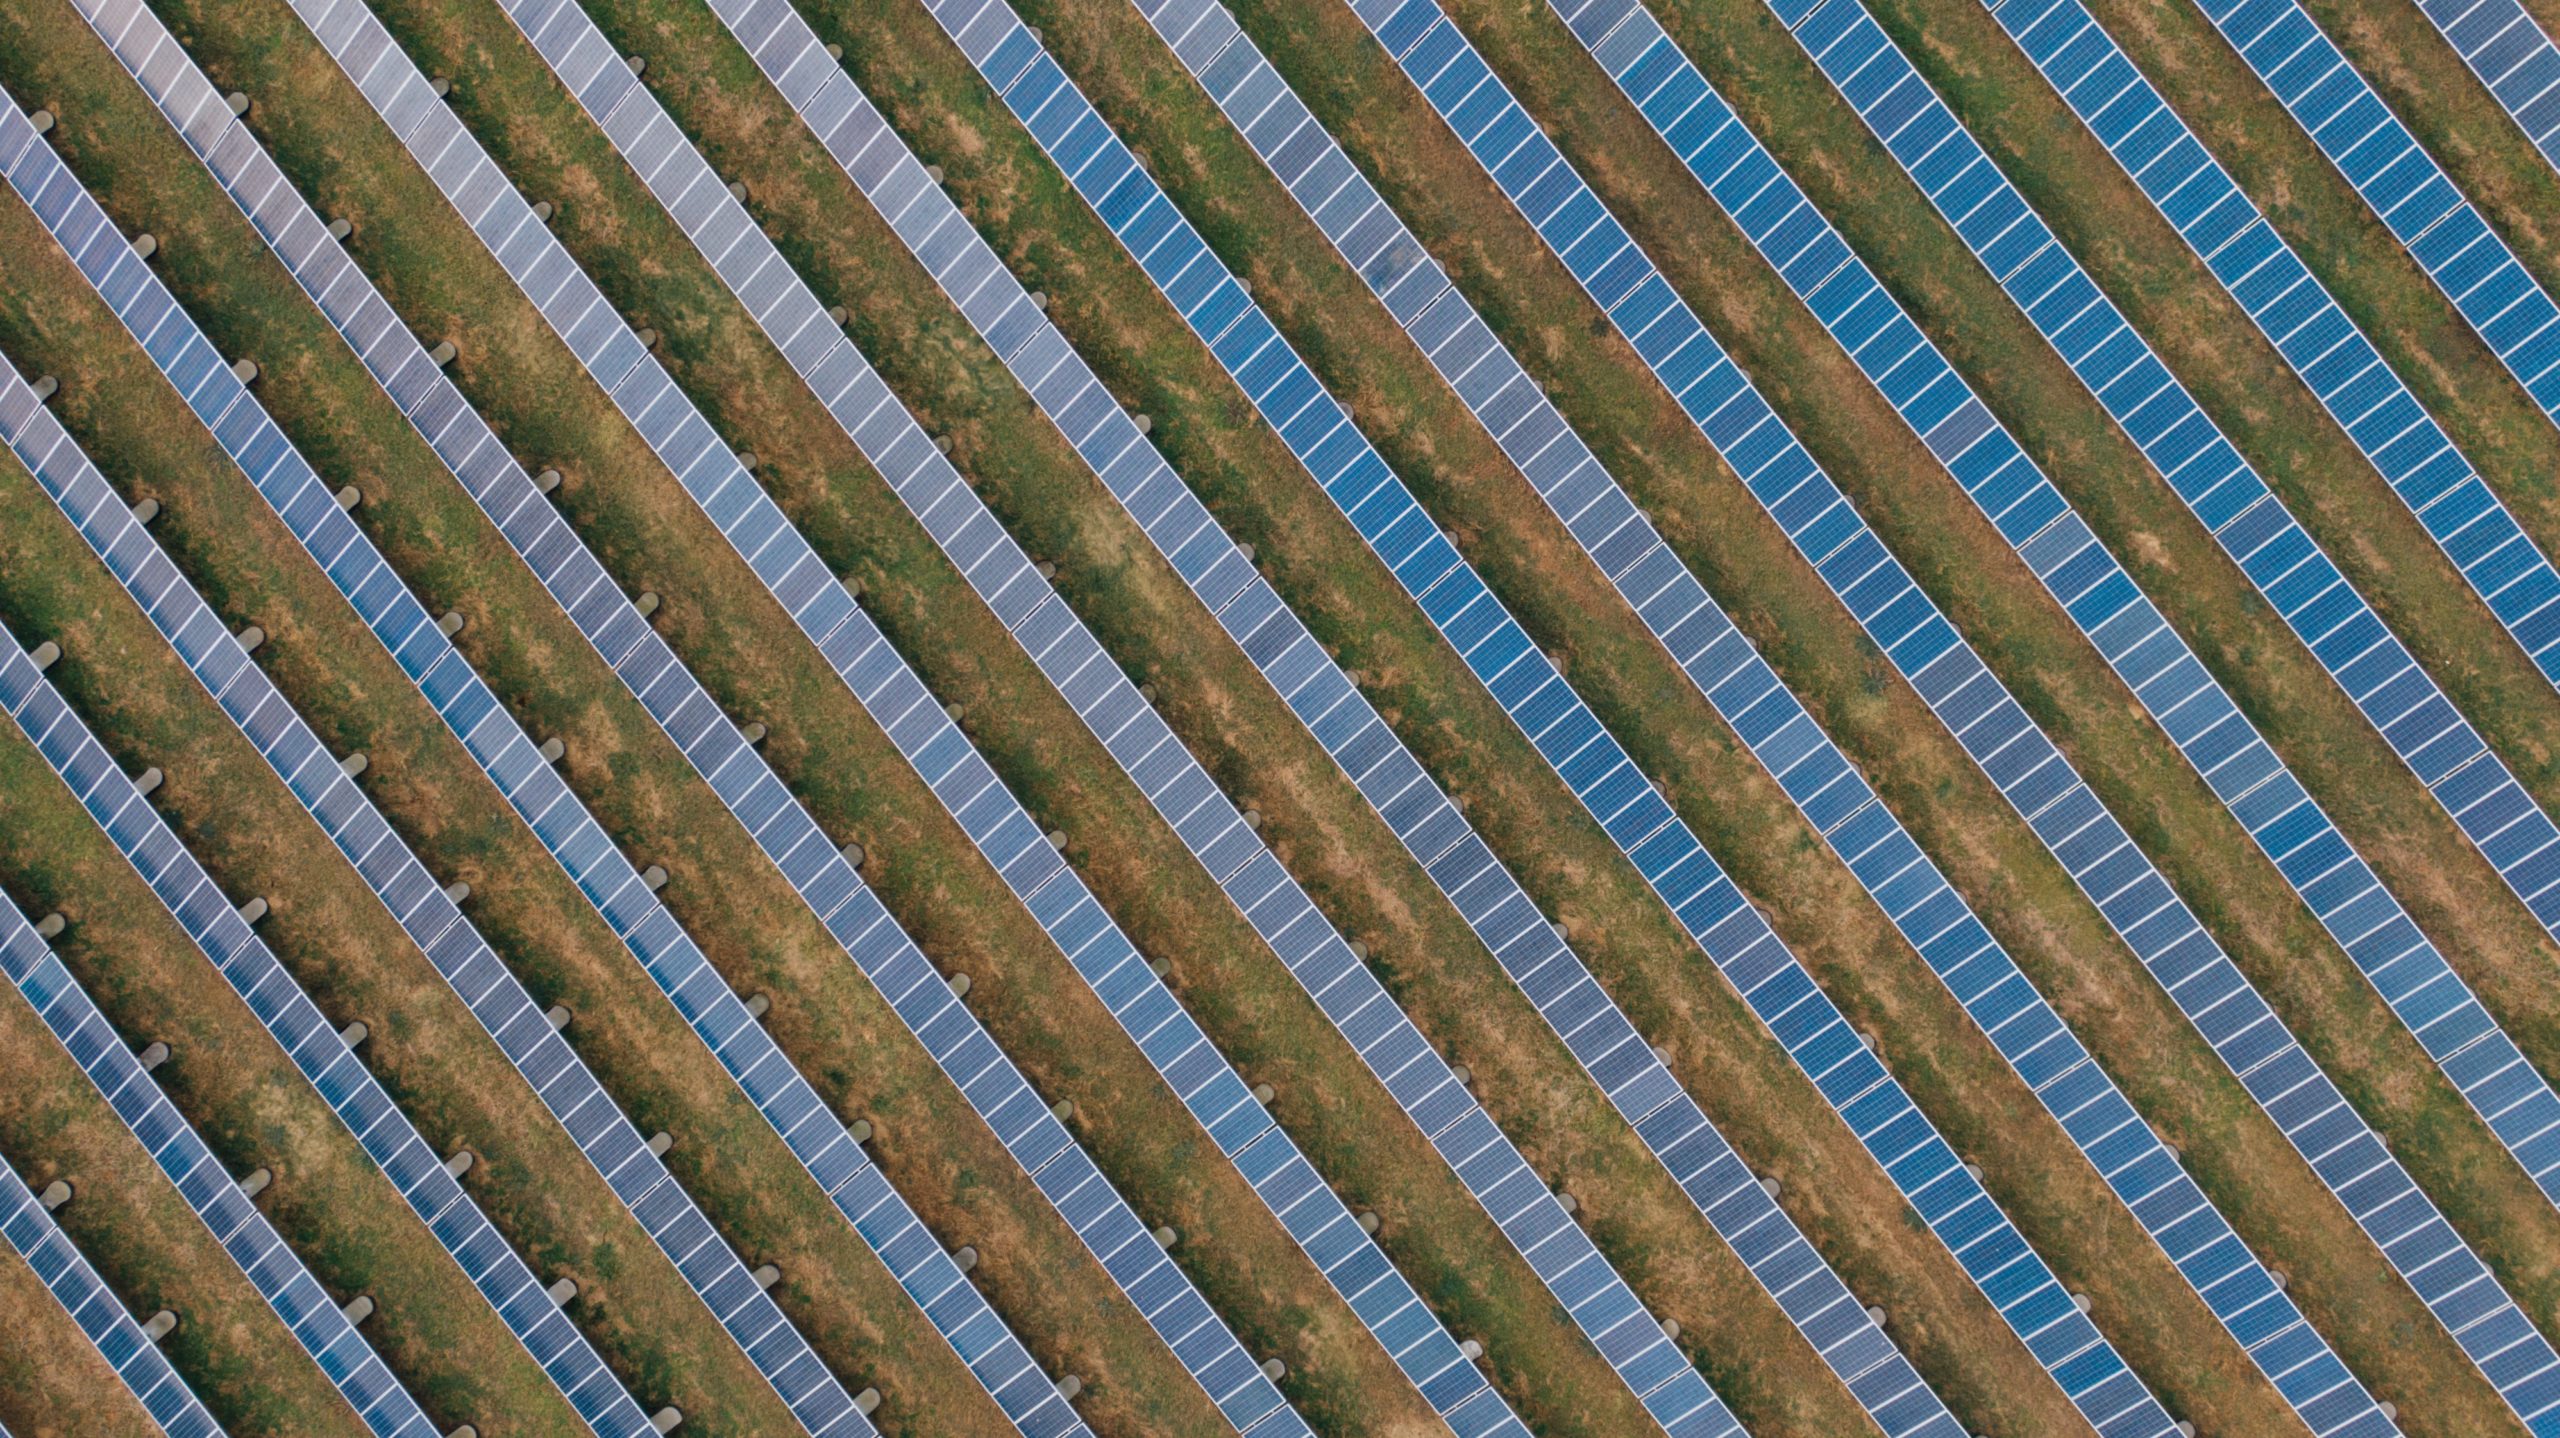 Se les llama granjas solares a las instalaciones a gran escala de paneles solares para generar electricidad limpia. Foto: Kelly/Pexels.